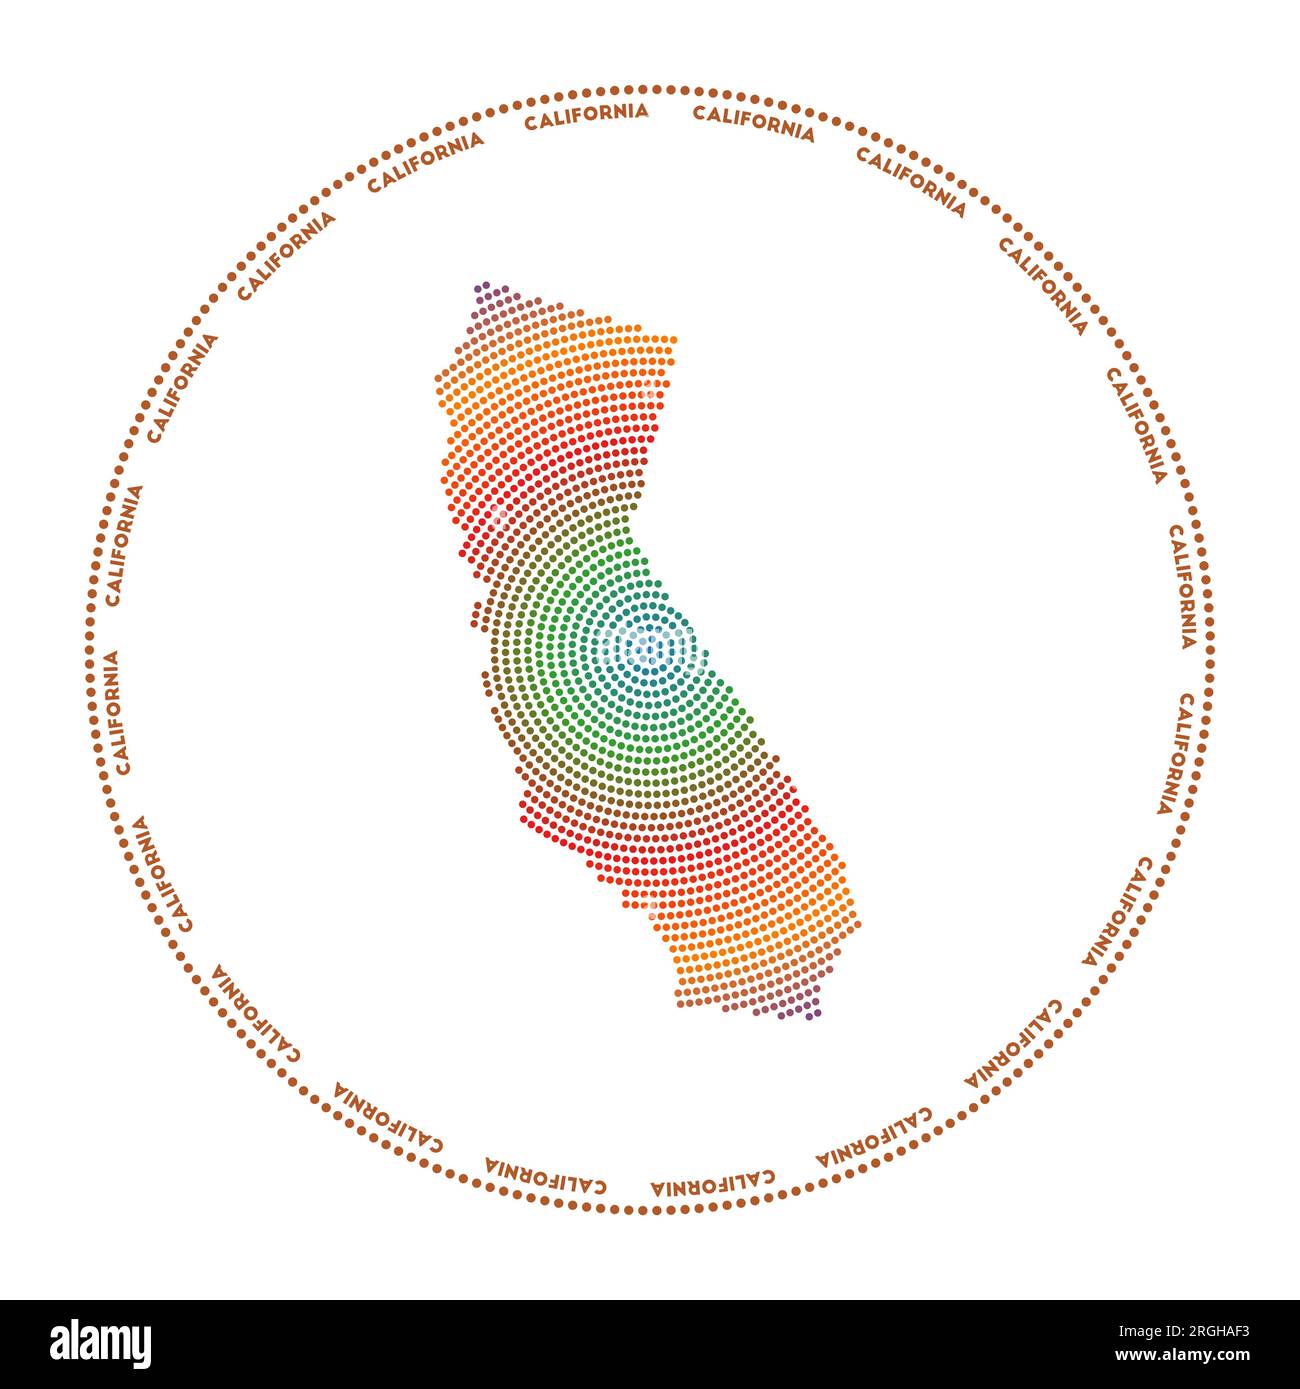 Kalifornisches Rundlogo. Digitale Form von Kalifornien im gepunkteten Kreis mit dem US-Staatsnamen. Technisches Symbol des US-Staates mit abgestuften Punkten. Erstaunlich Stock Vektor